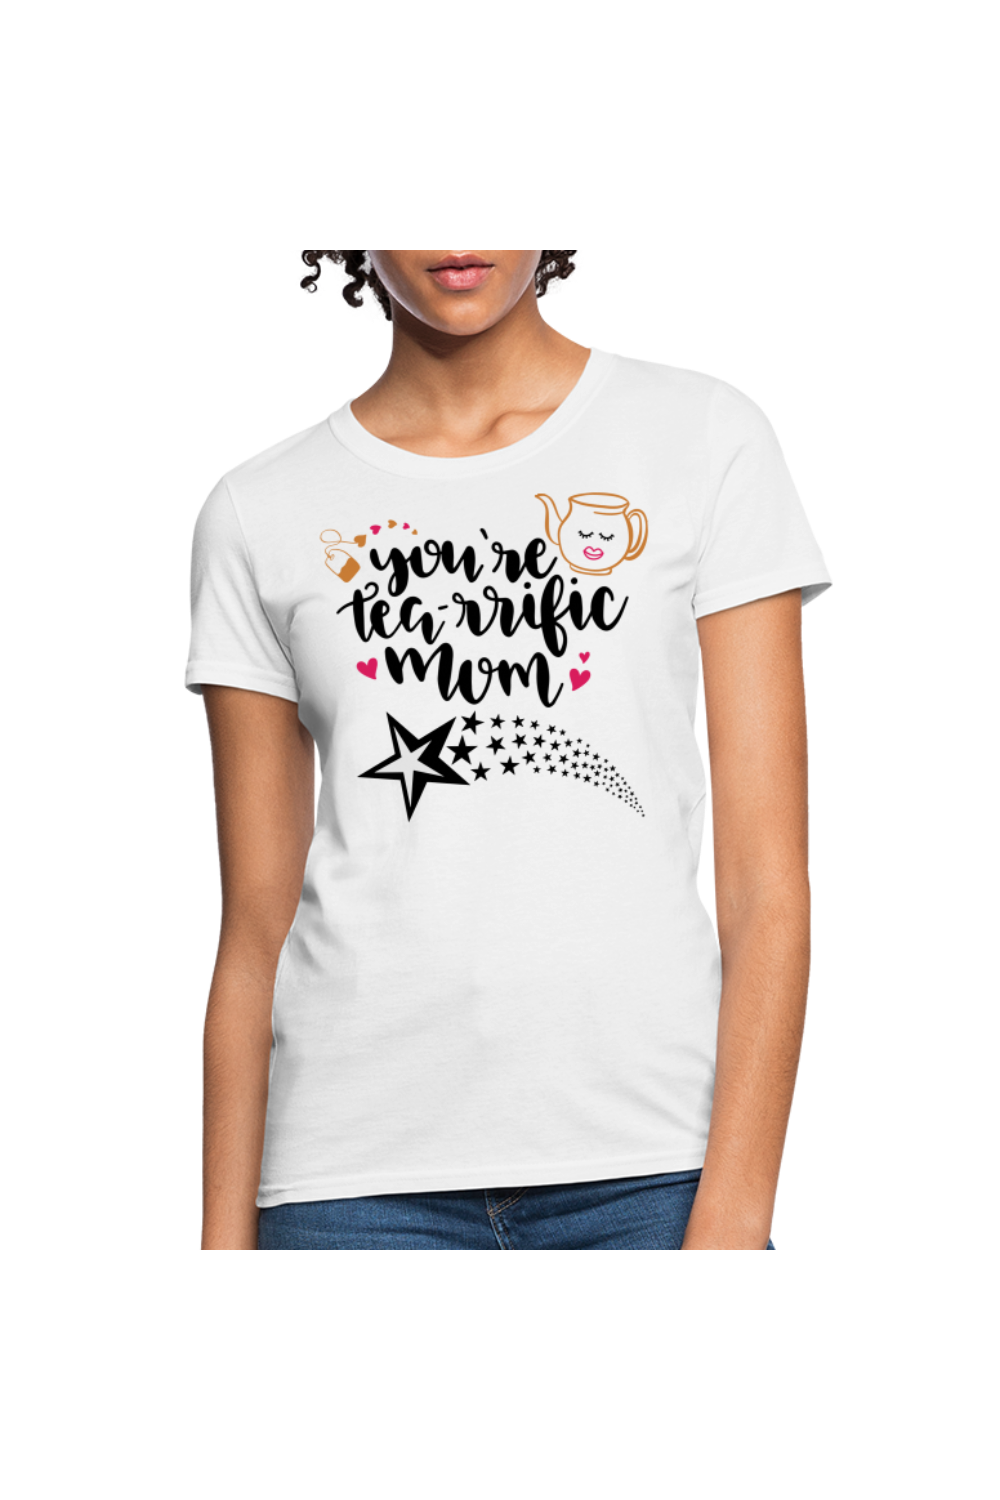 Women's Tea-rrific Mom T-Shirt - white